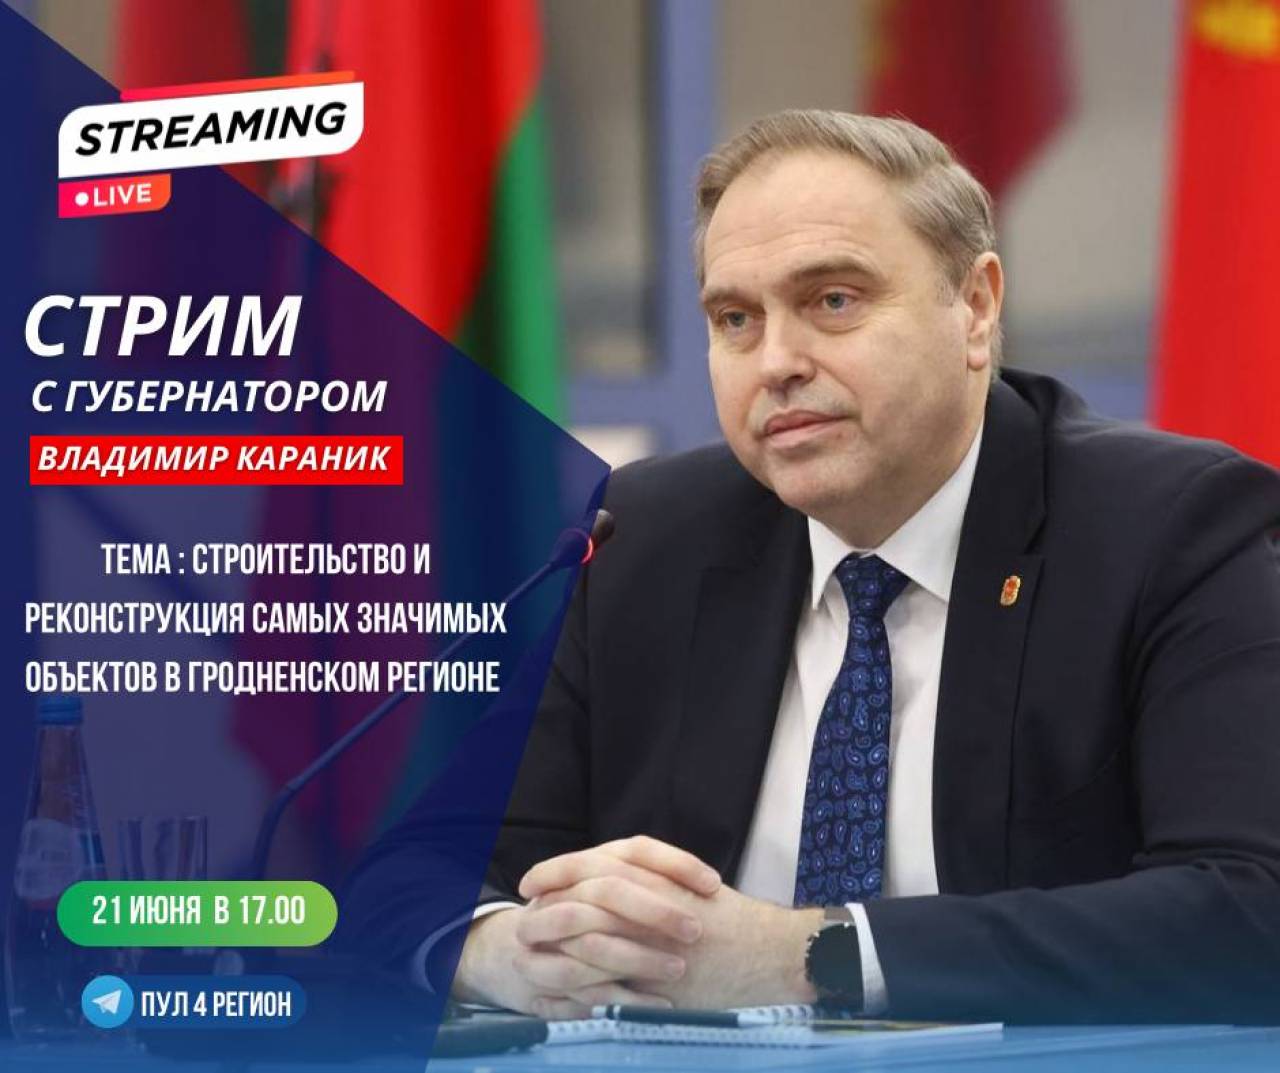 21 июня Владимир Караник проведет прямой эфир на YouTube — расскажет про строительство и реконструкцию значимых объектов региона